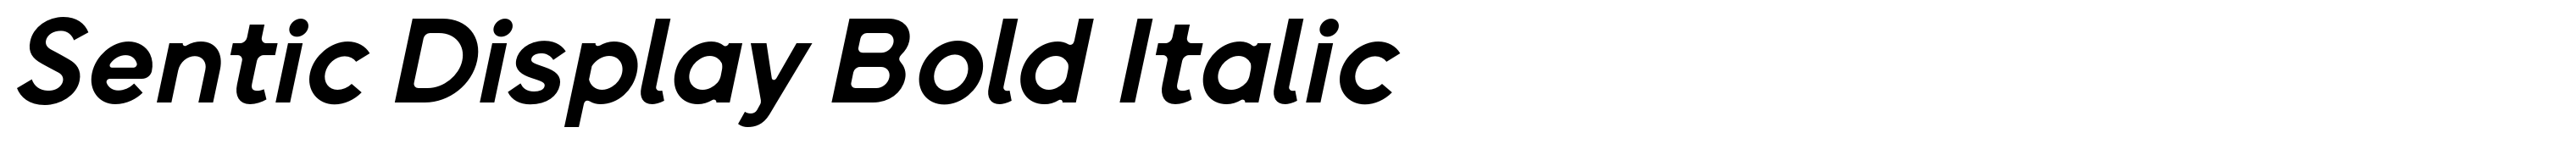 Sentic Display Bold Italic